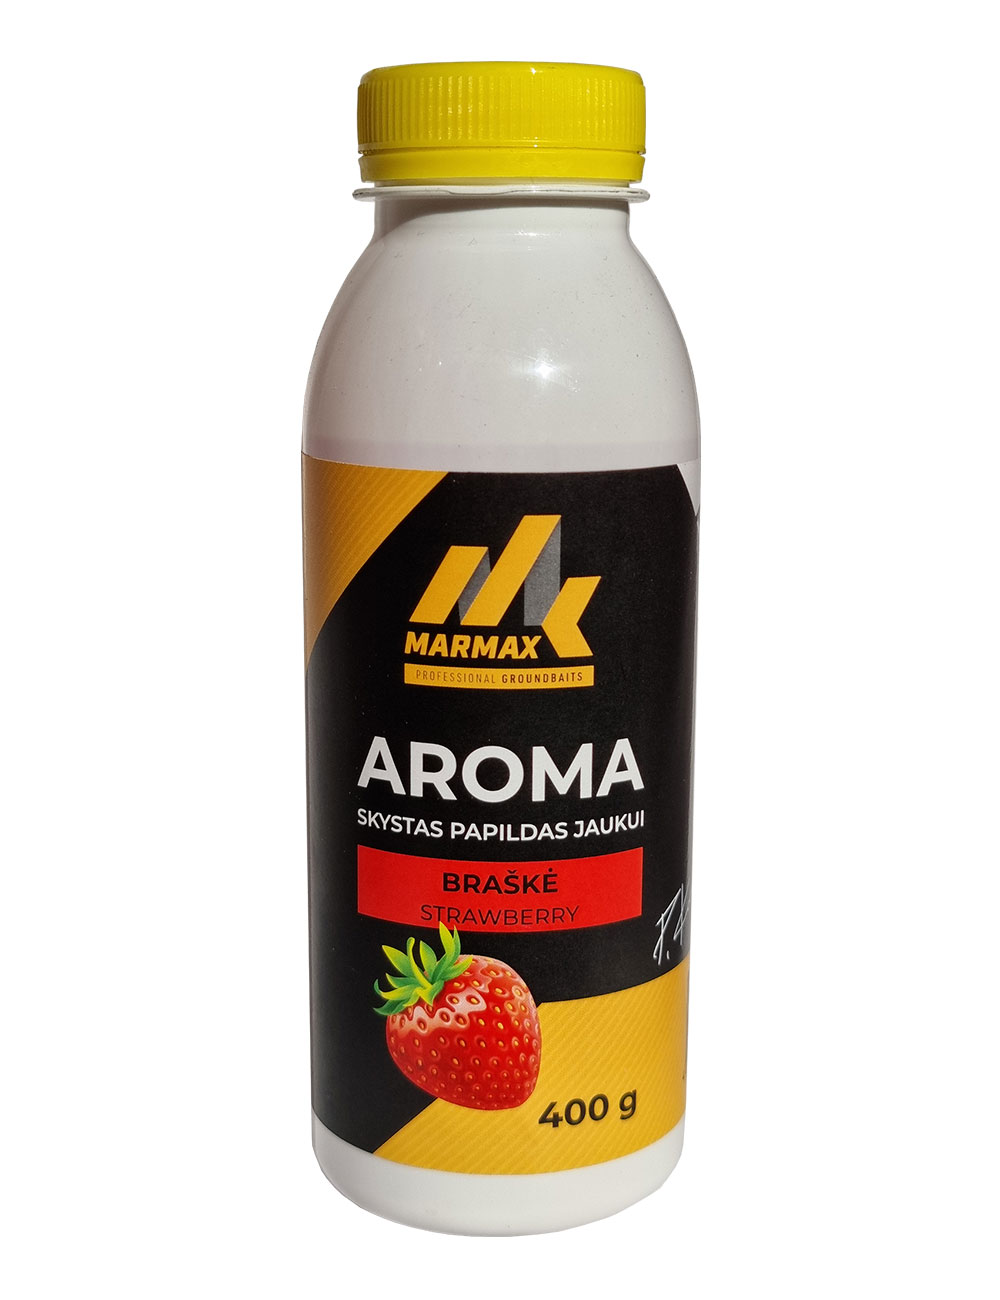 Aroma - Braškė (400g)